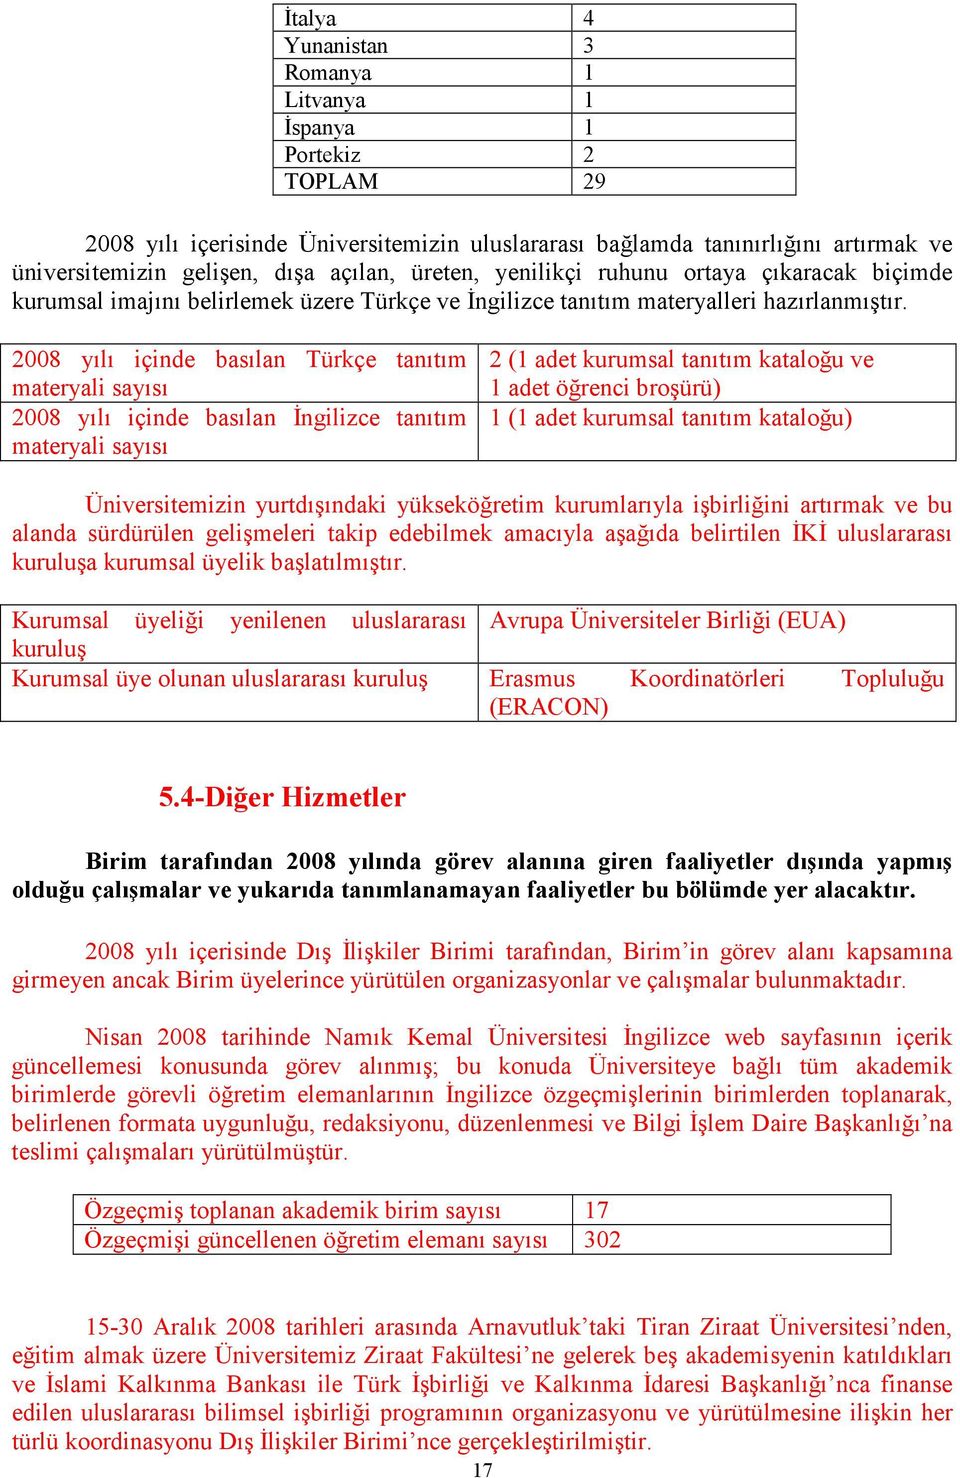 2008 yılı içinde basılan Türkçe tanıtım materyali sayısı 2008 yılı içinde basılan Đngilizce tanıtım materyali sayısı 2 (1 adet kurumsal tanıtım kataloğu ve 1 adet öğrenci broşürü) 1 (1 adet kurumsal